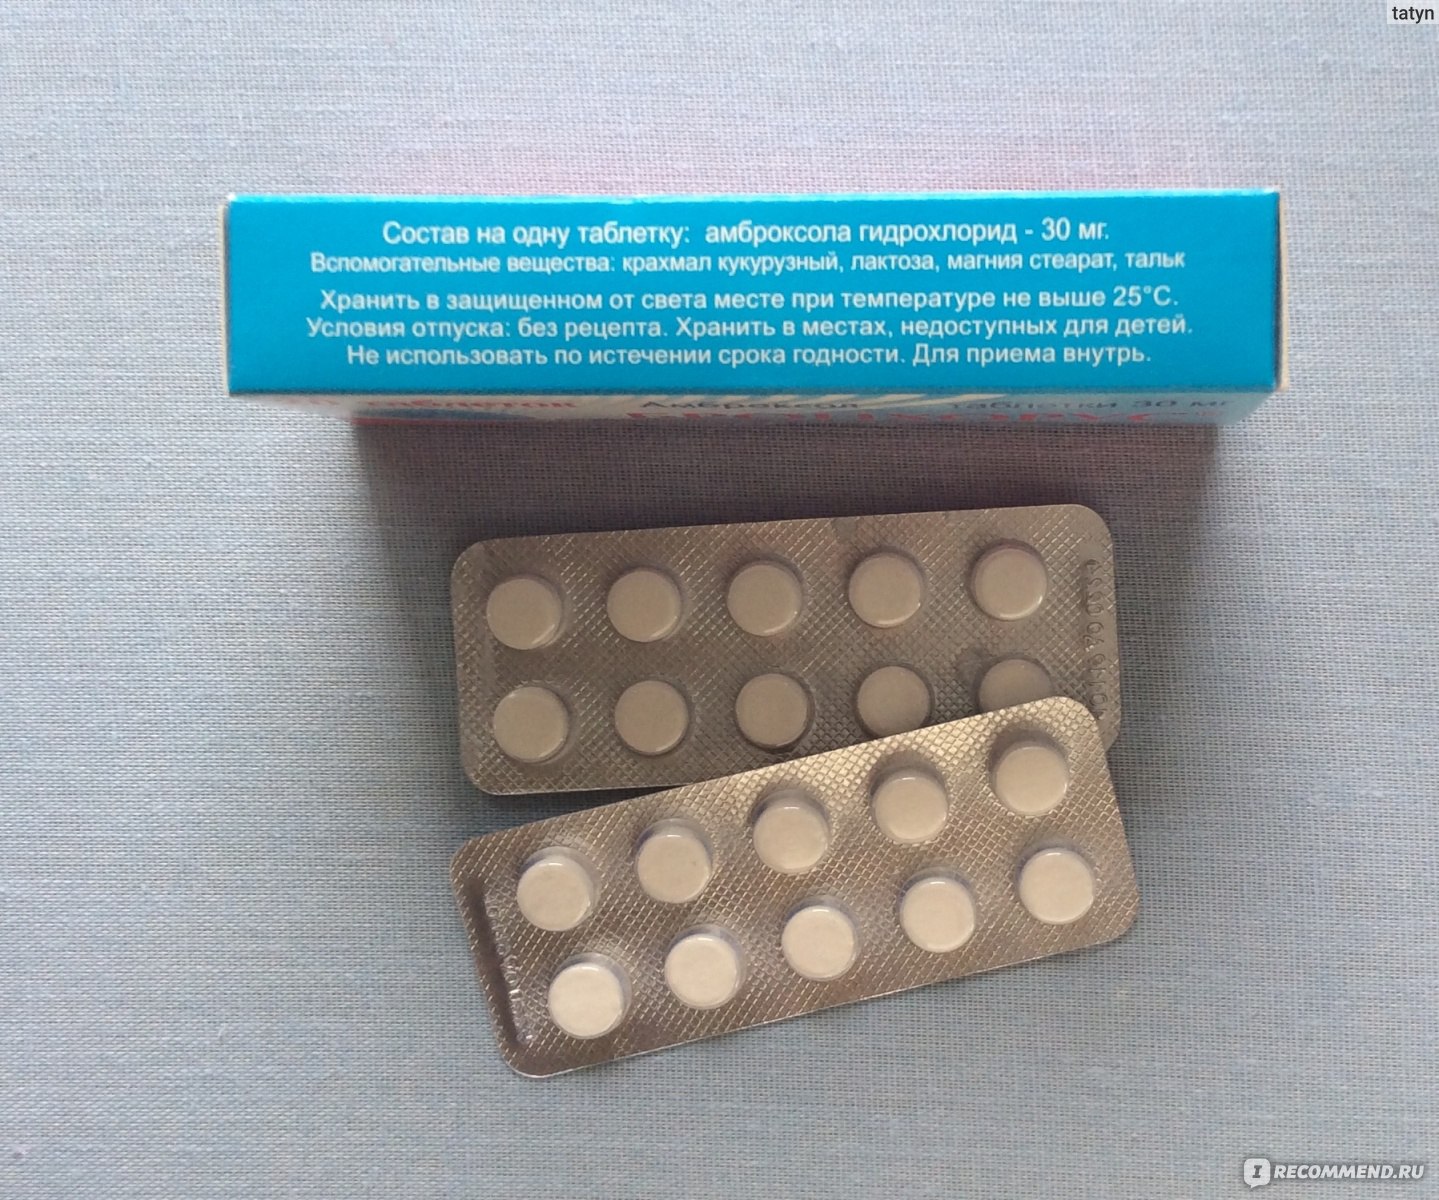 таблетки от кашля фото упаковки